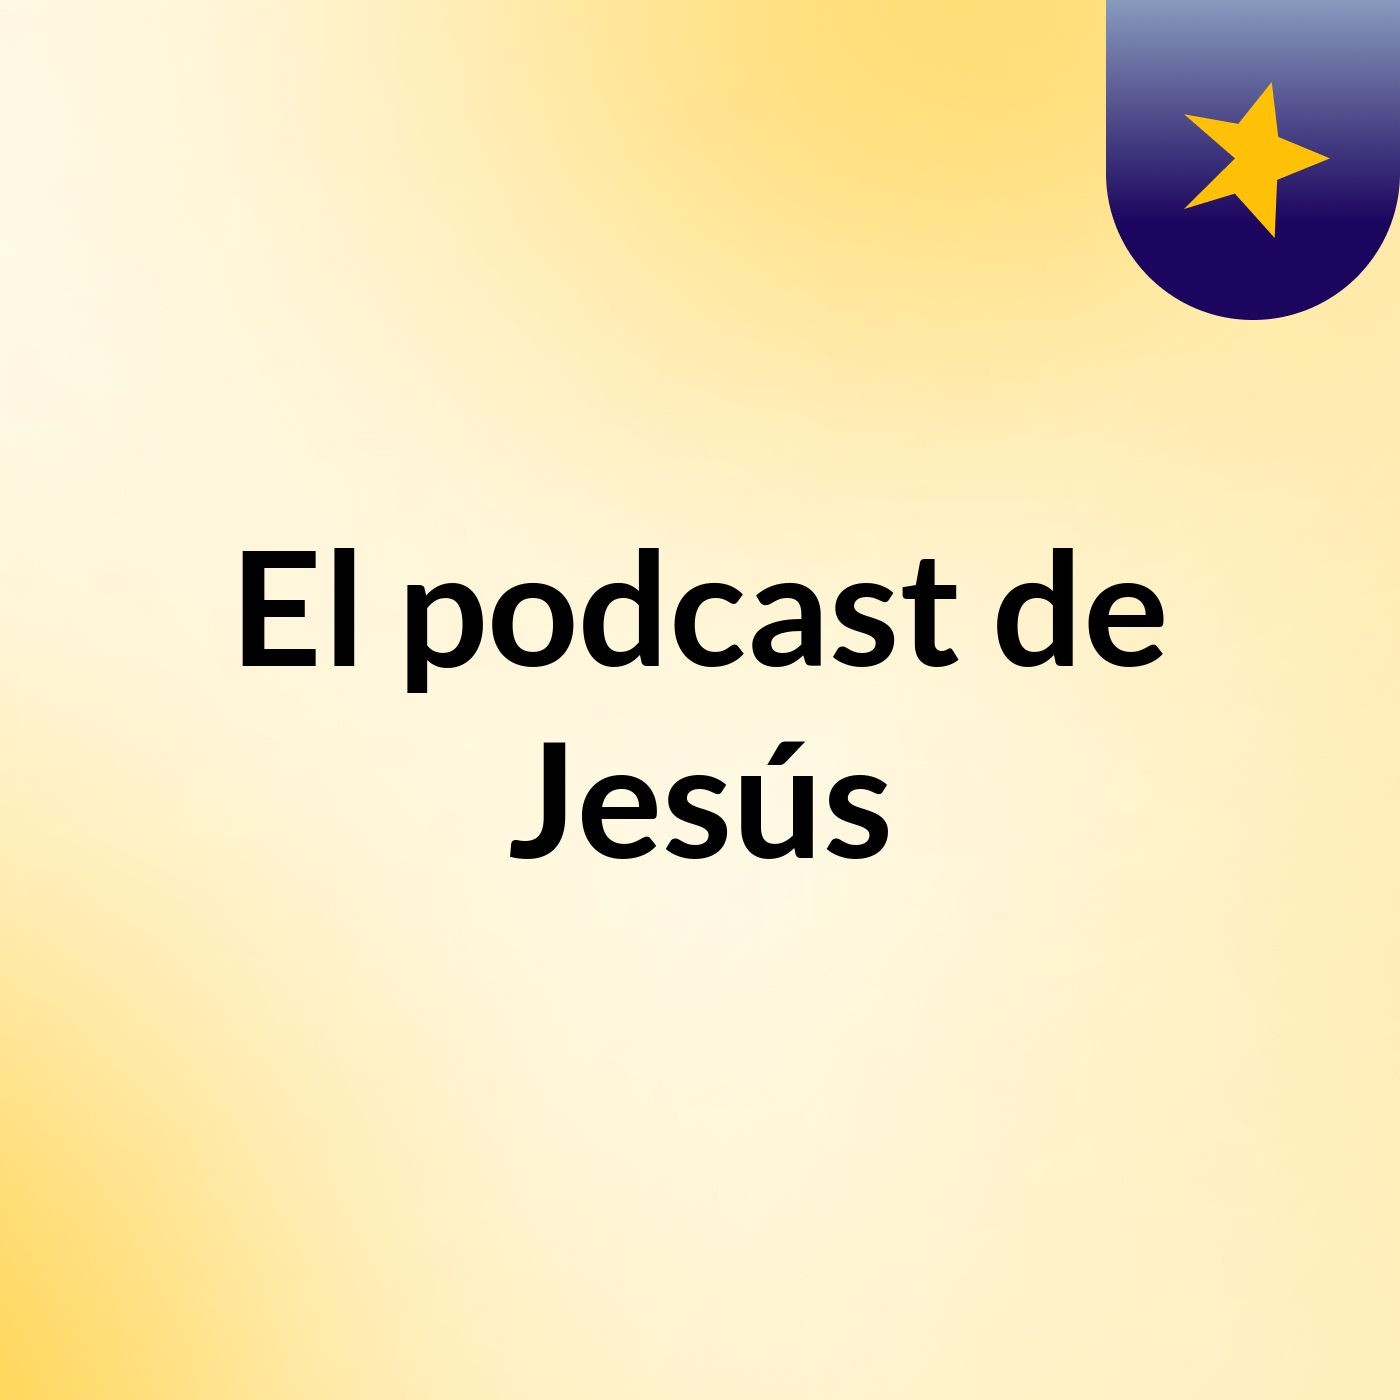 Episodio 20 - El podcast de Jesús